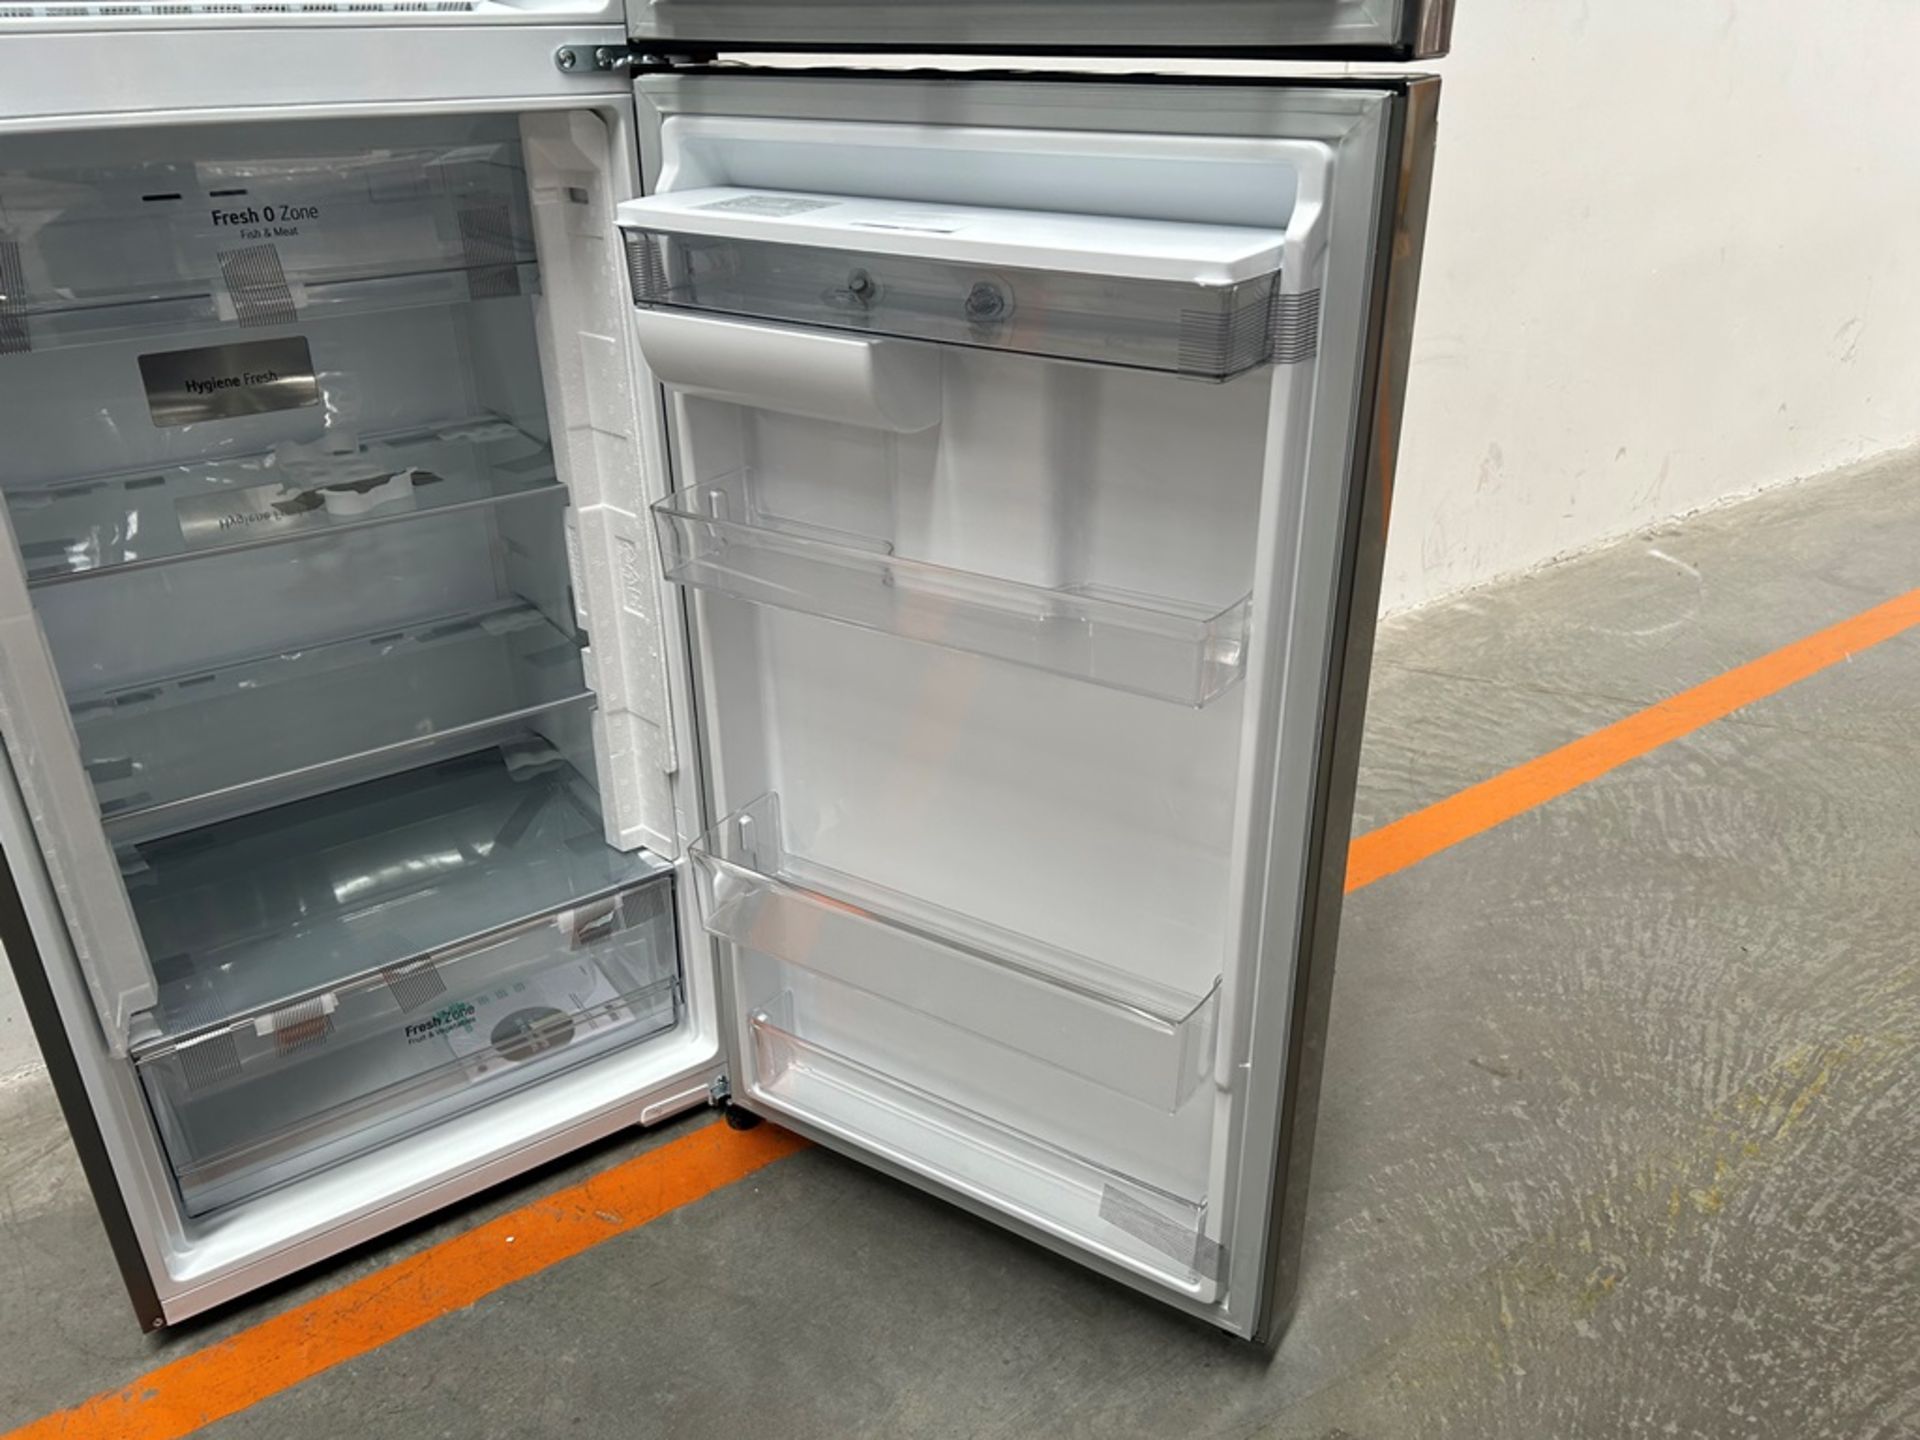 (NUEVO) Refrigerador con dispensador de agua Marca LG, Modelo VT40AWP, Serie 1S414, Color GRIS - Image 7 of 11